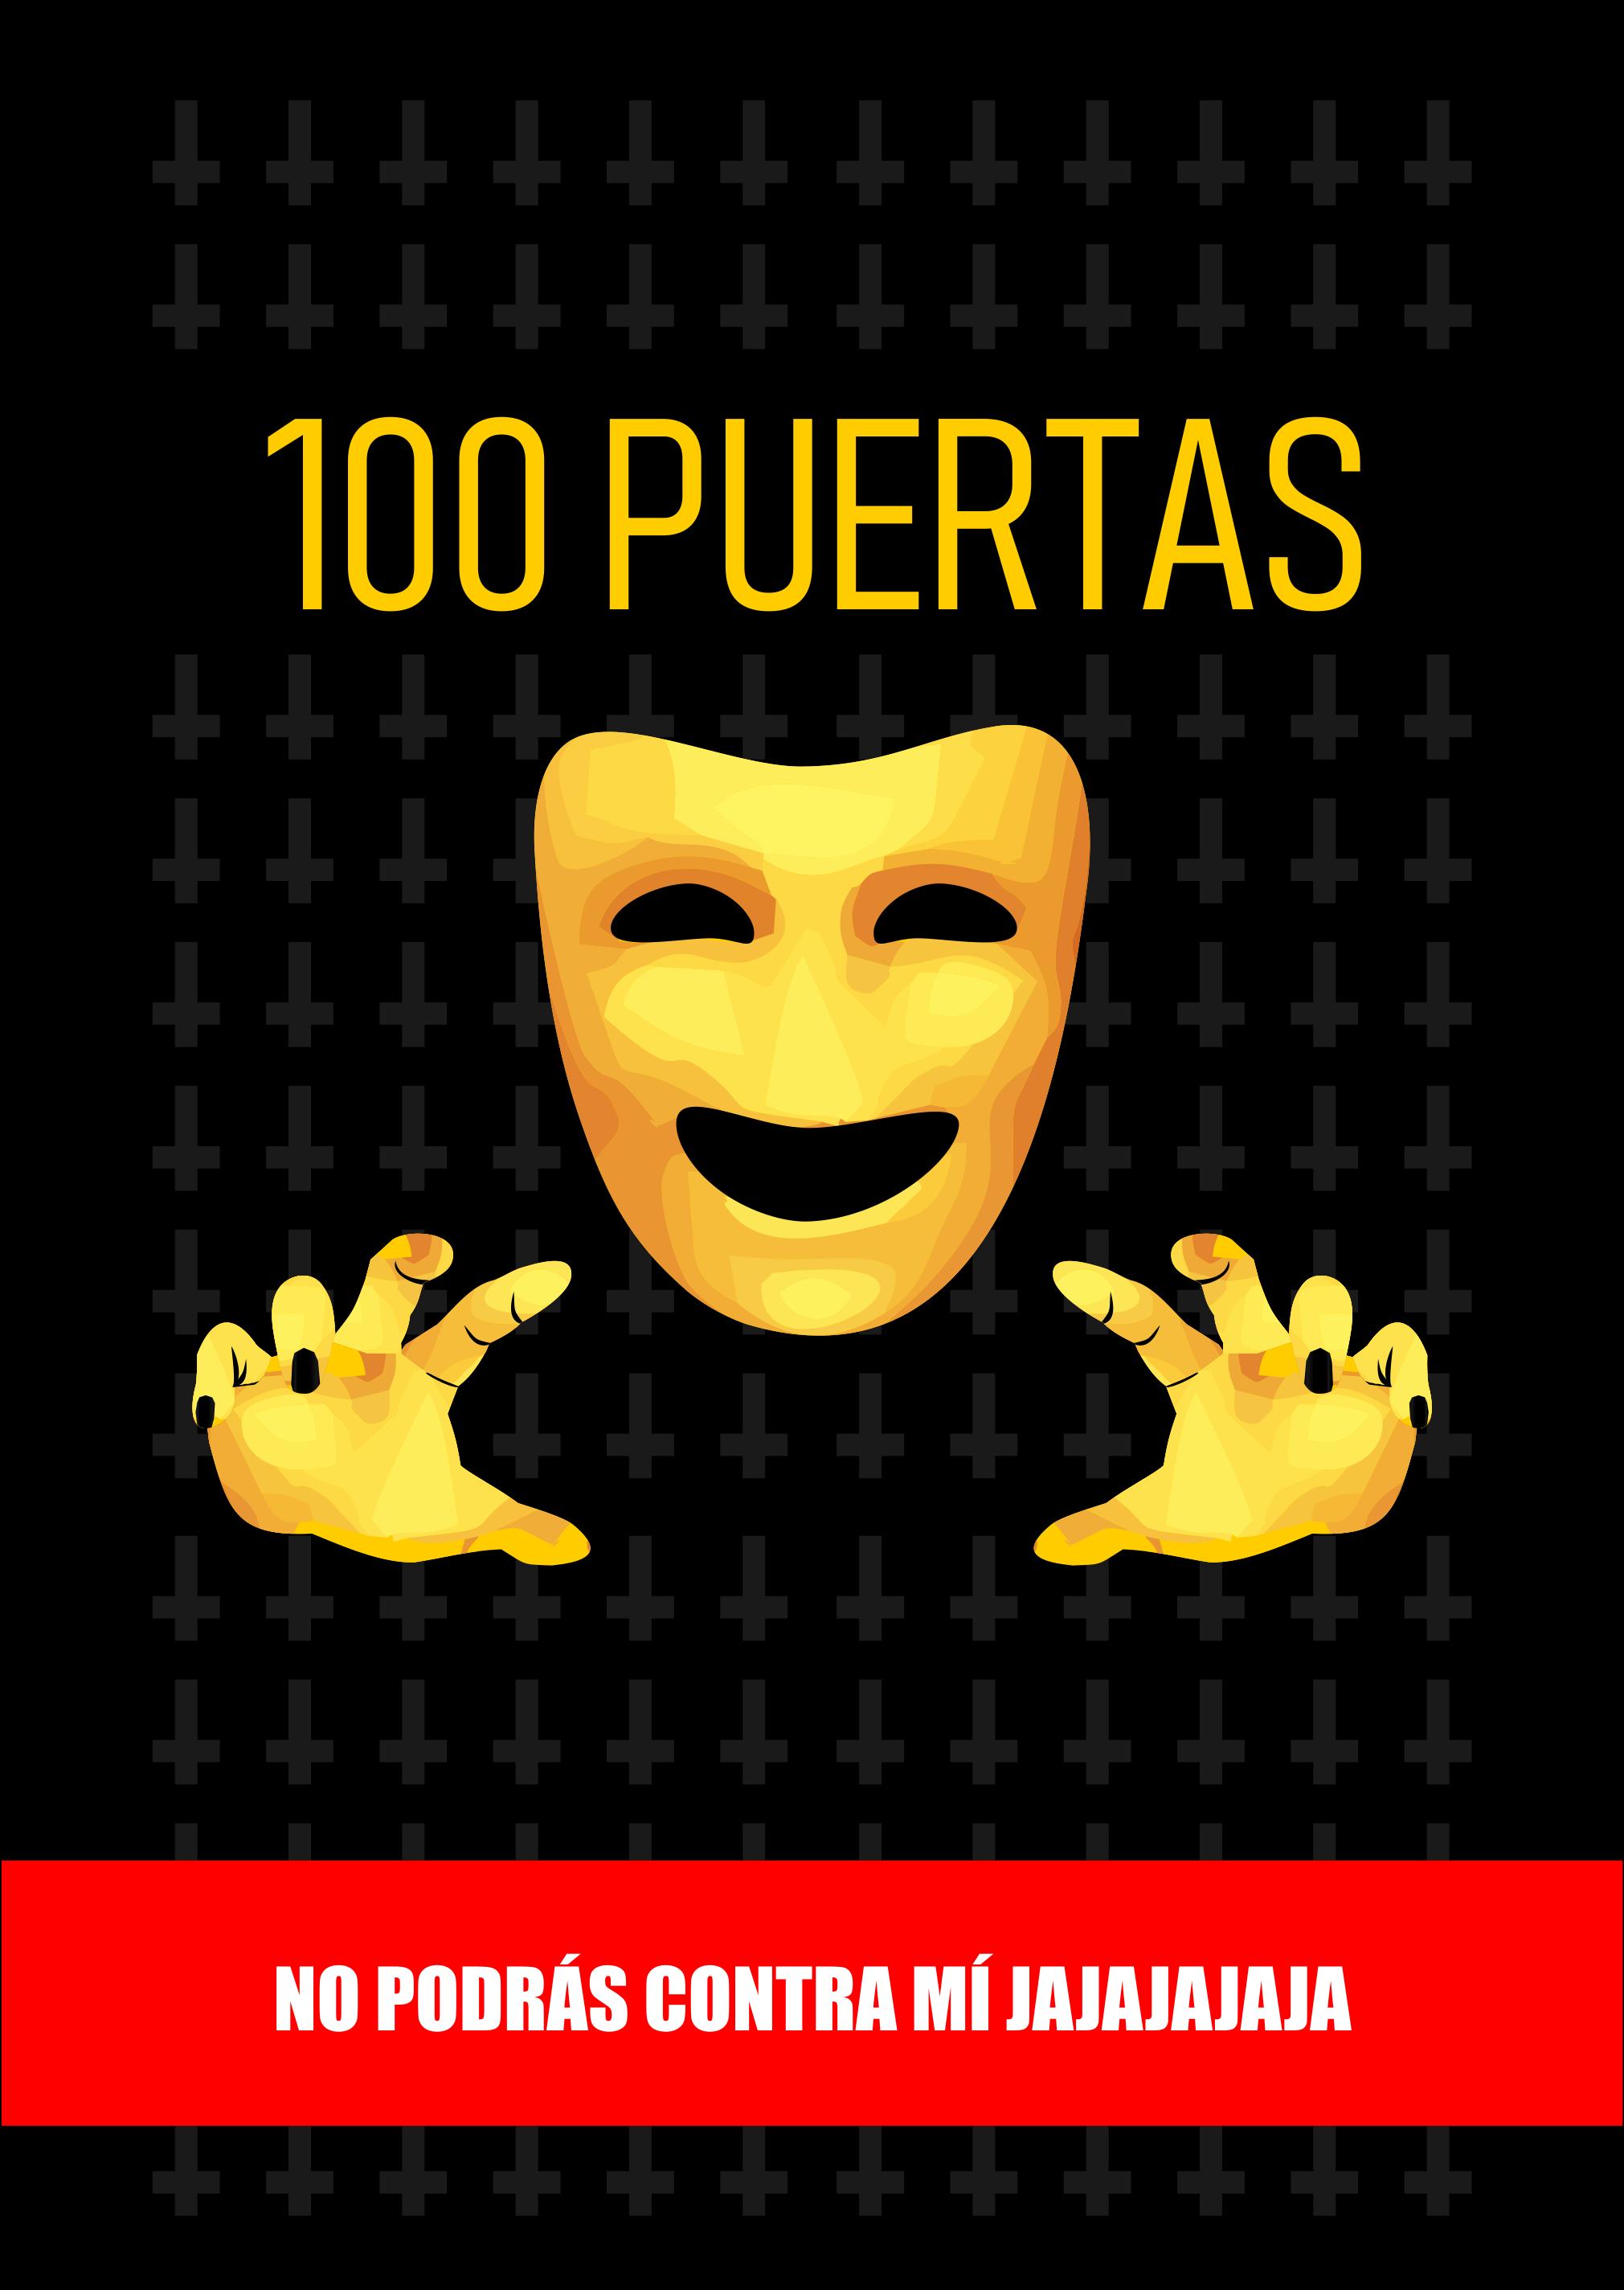 100 puertas - Juego de terror APK for Android Download